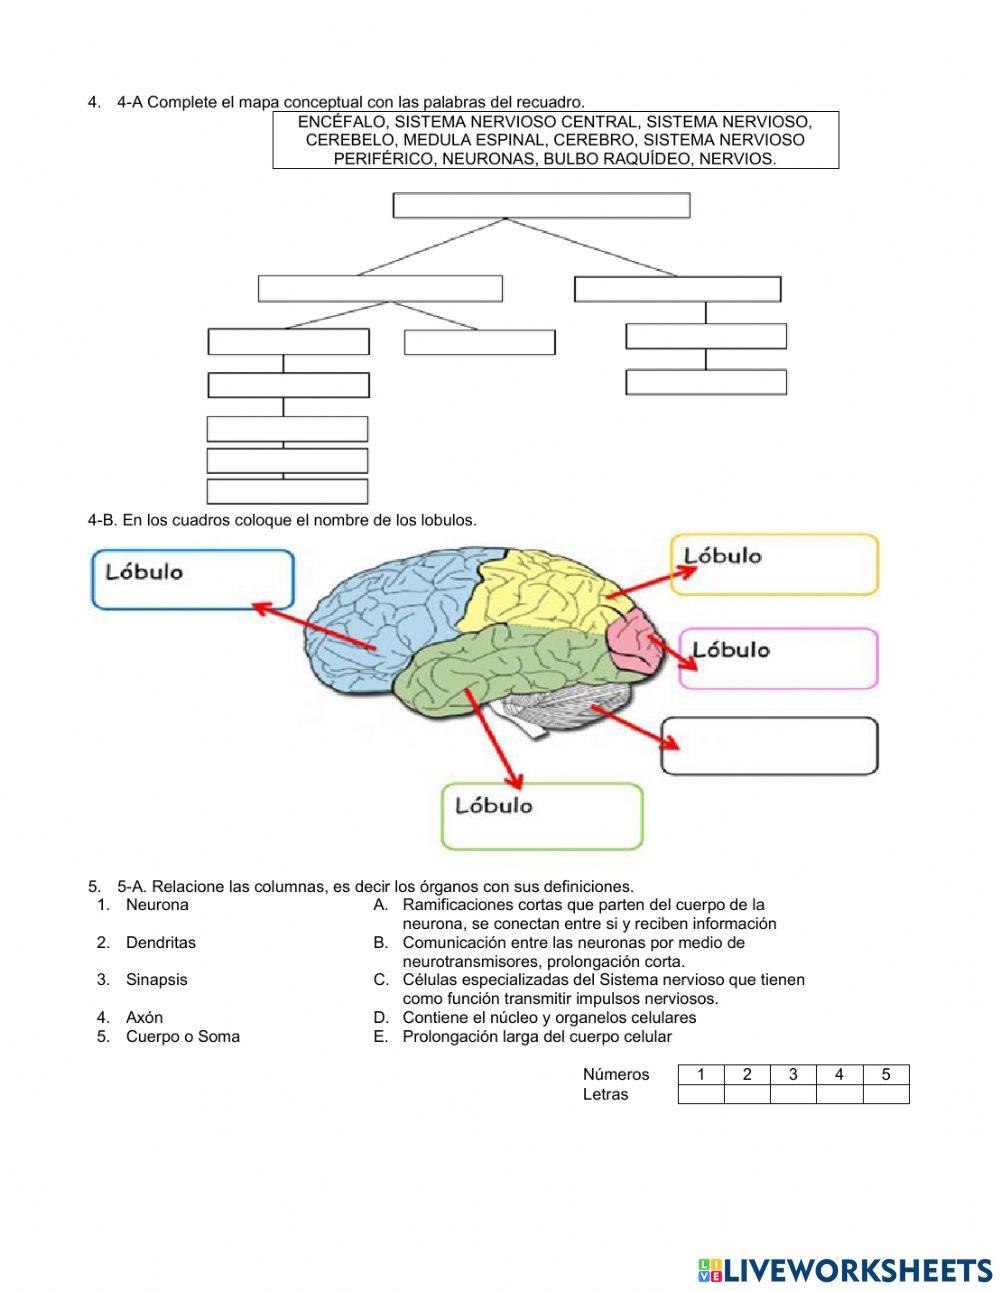 El cerebro Humano